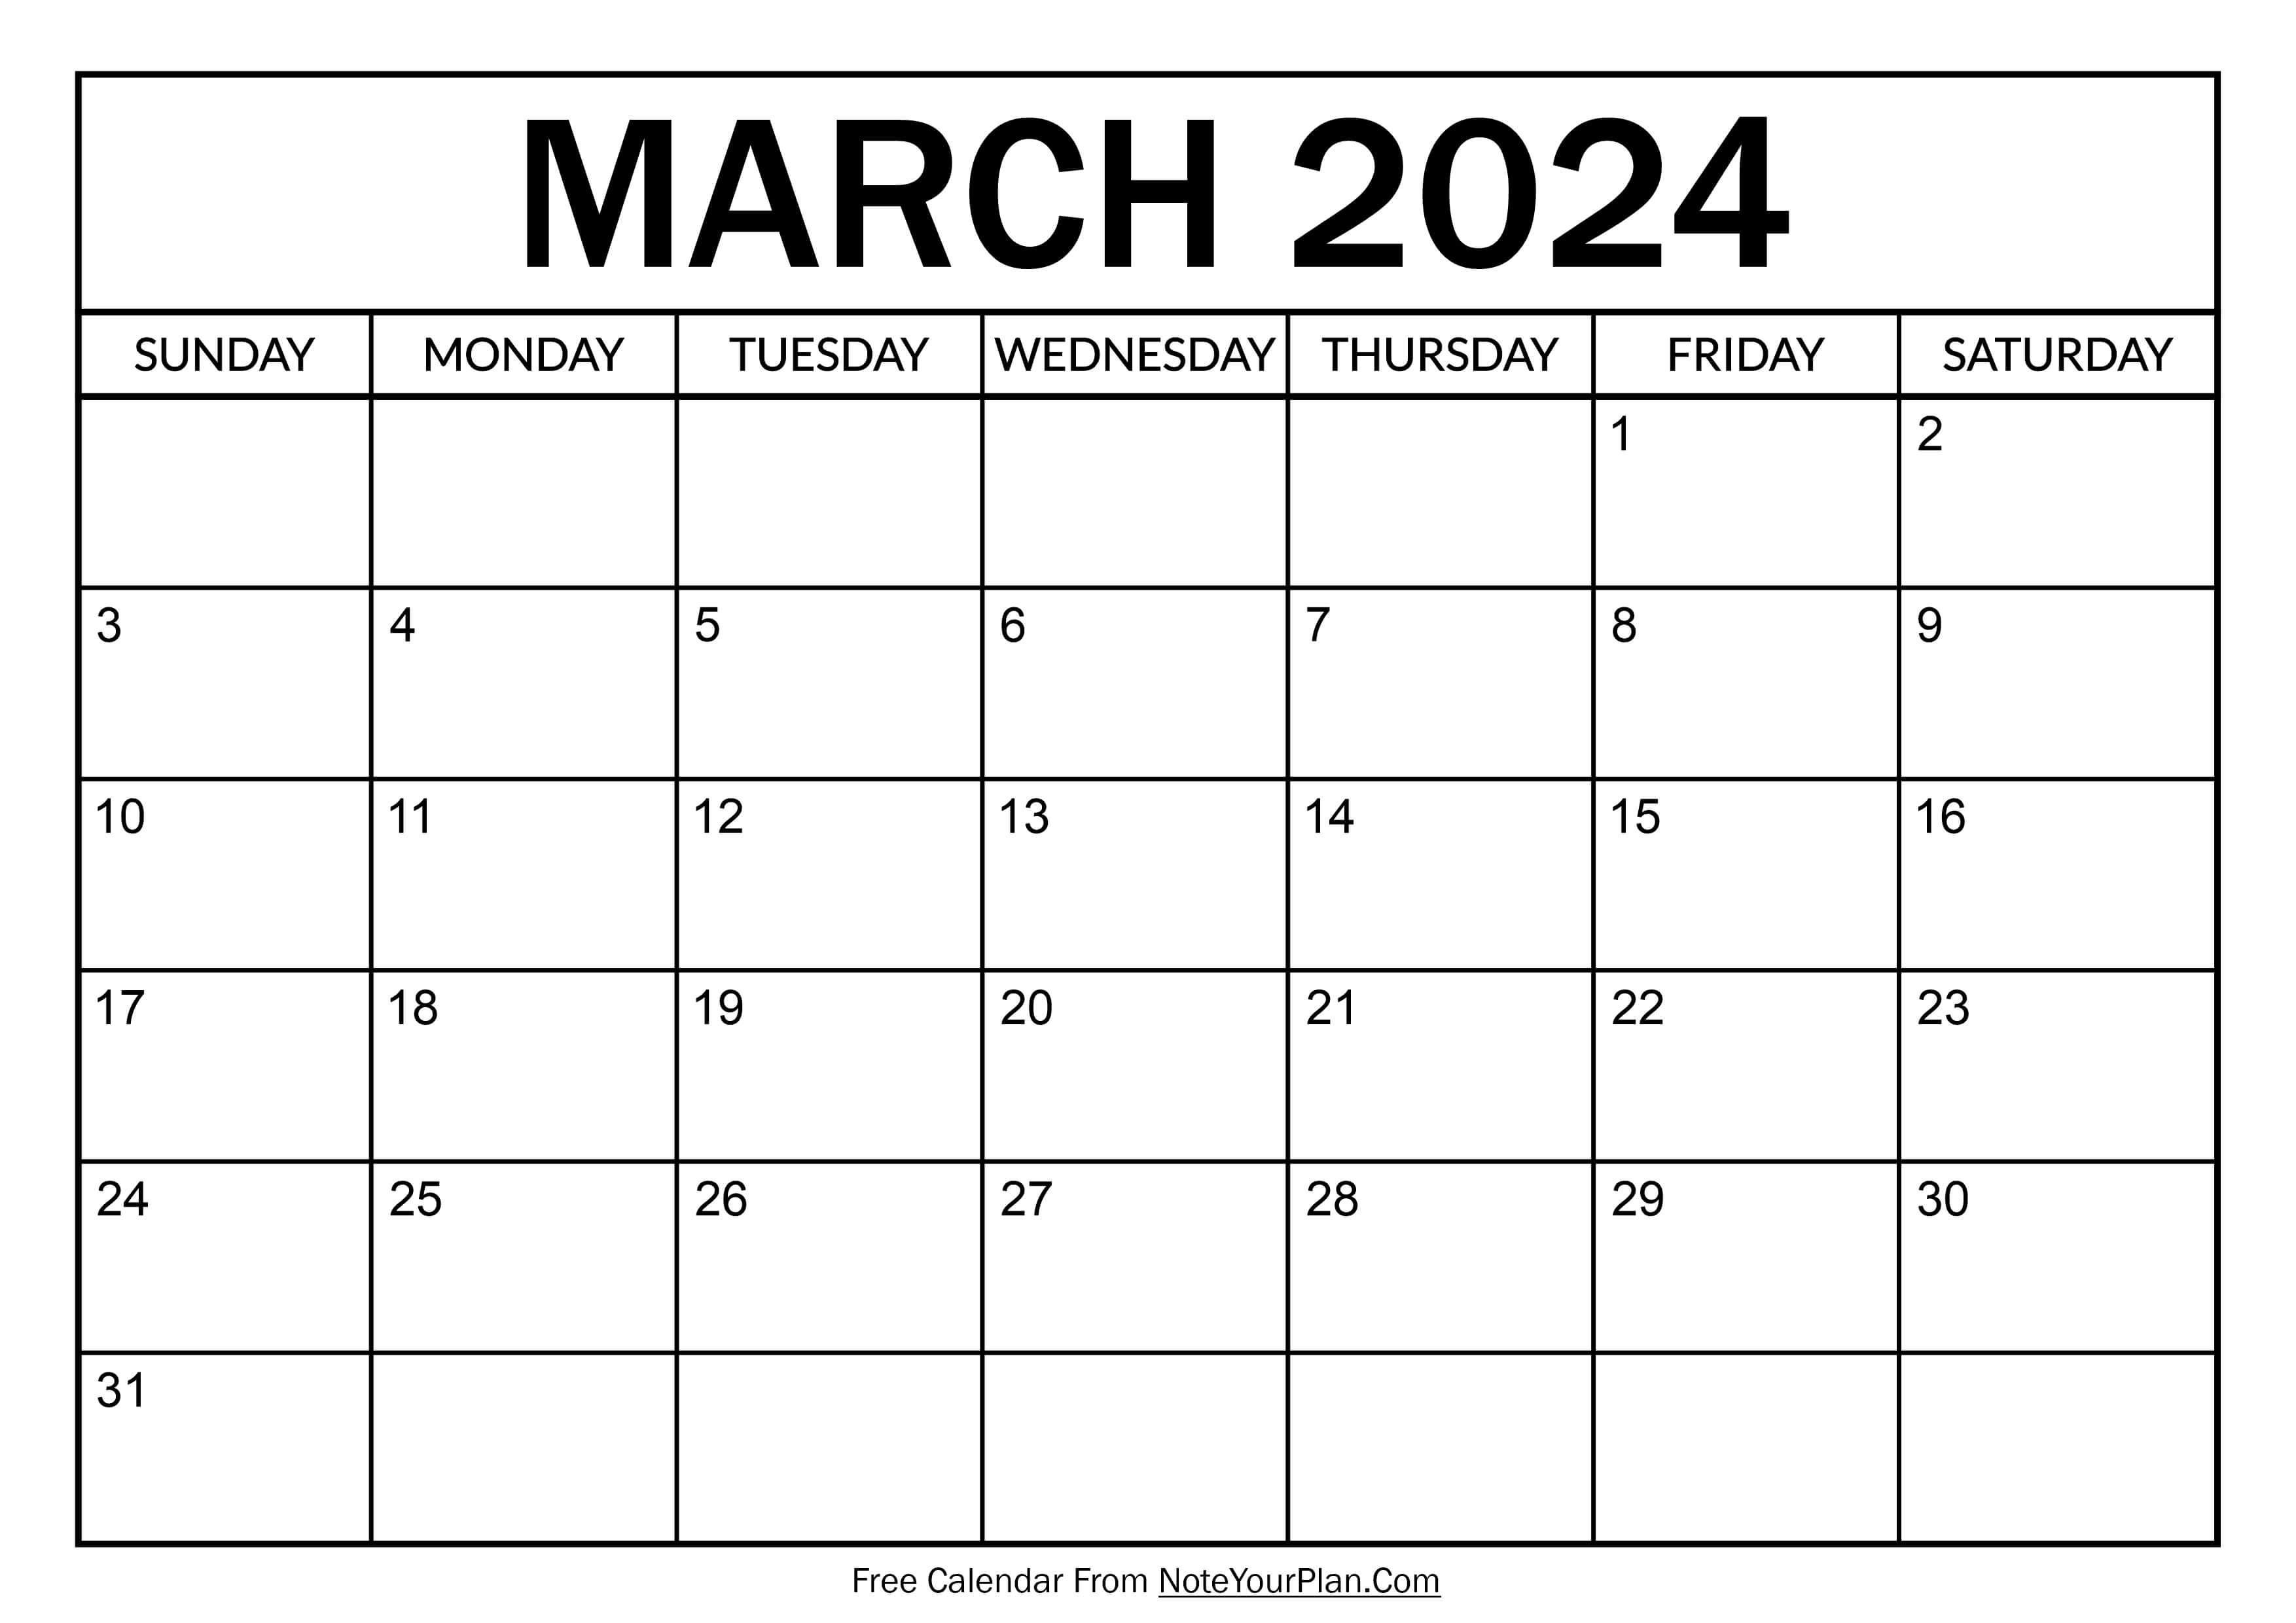 Free March Calendar 2024